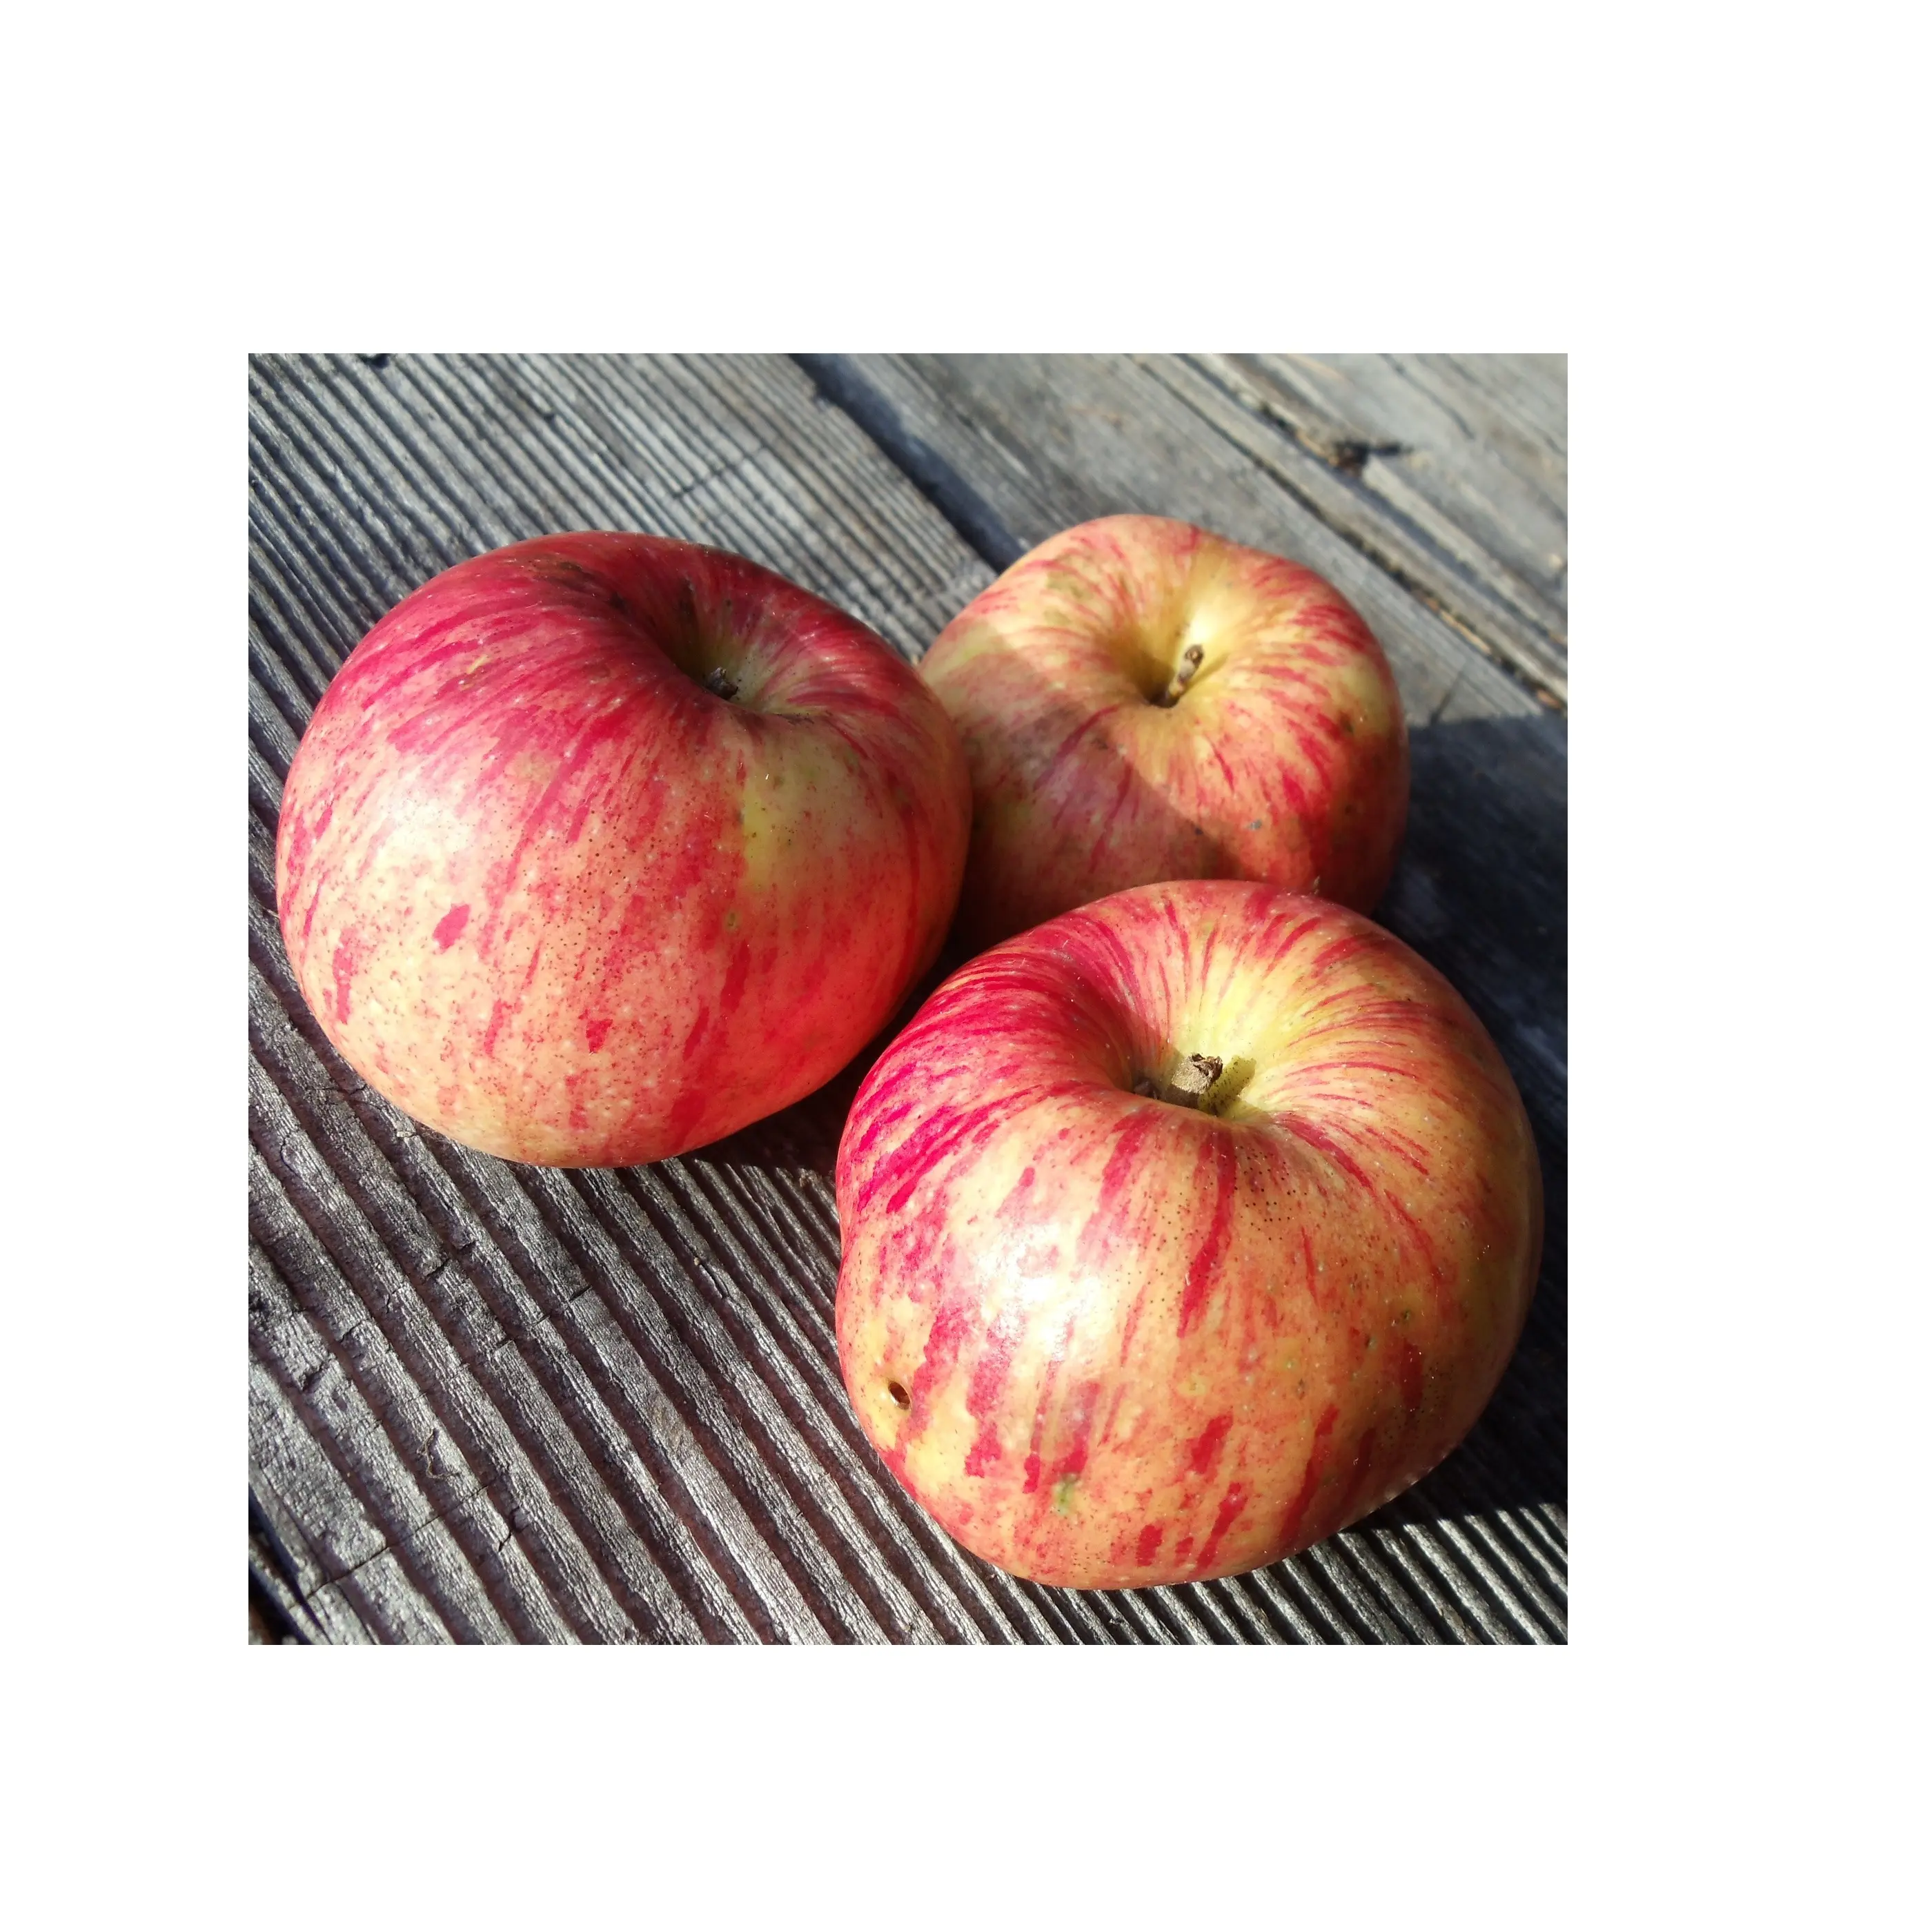 Goedkope Prijs Verse Voorraad Fruit Gravenstein Rode Appels | Verse Gravenstein Appels Te Koop In Bulk Met Snelle Levering